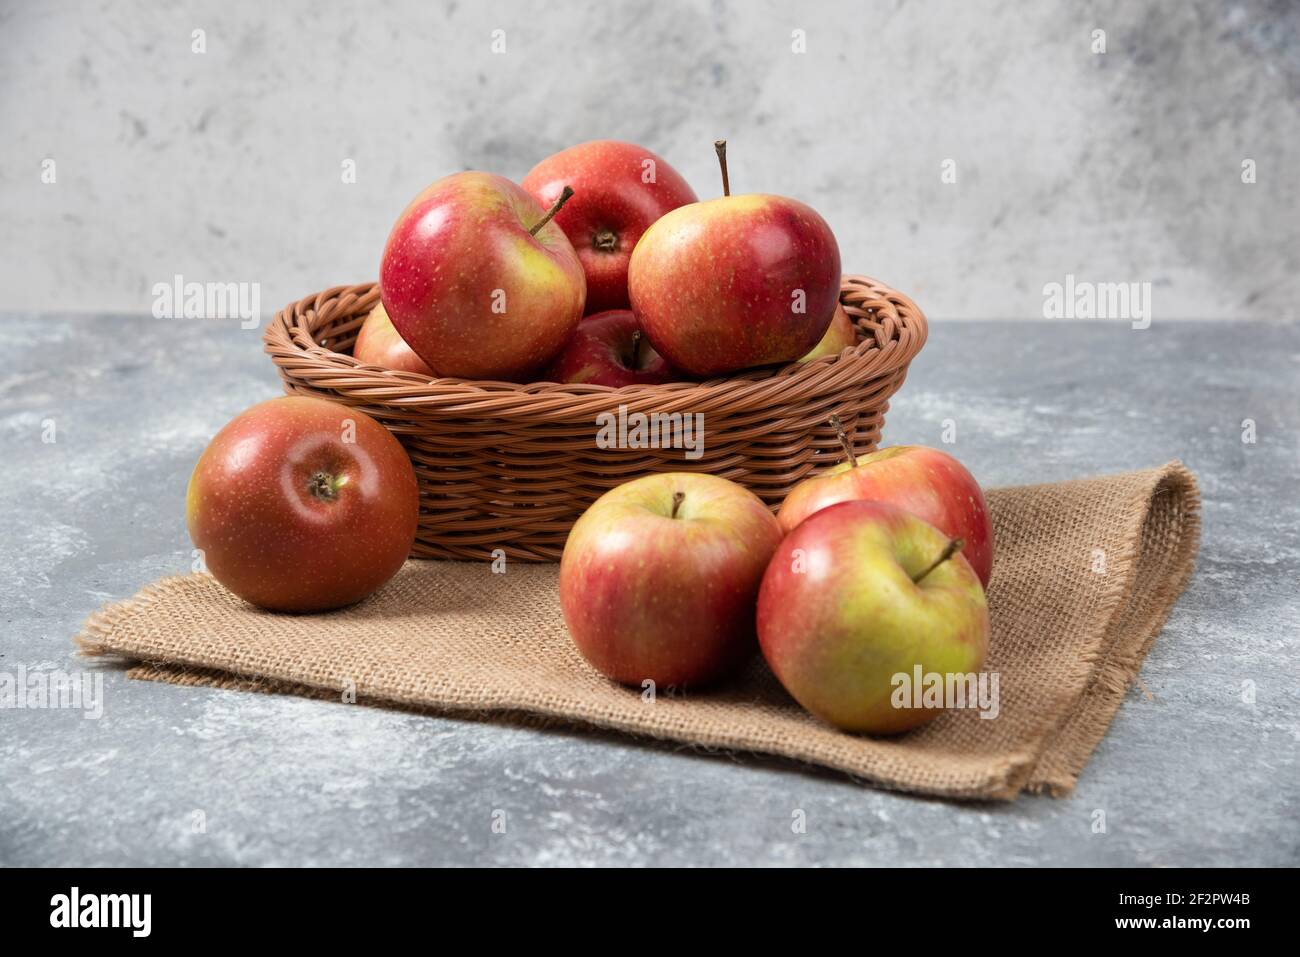 Korbkorb mit reifen glänzenden Äpfeln auf Marmoroberfläche Stockfoto